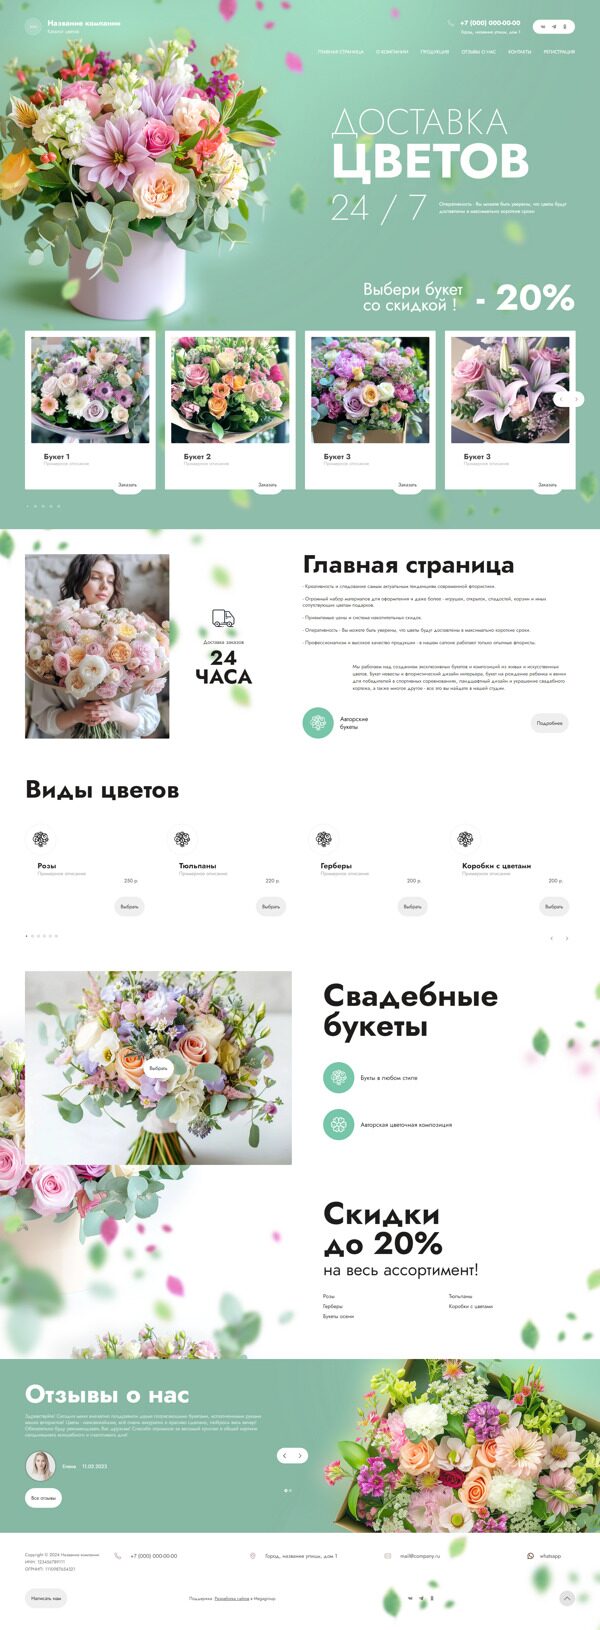 Готовый Сайт-Бизнес № 5669624 - Каталог цветов (Десктопная версия)